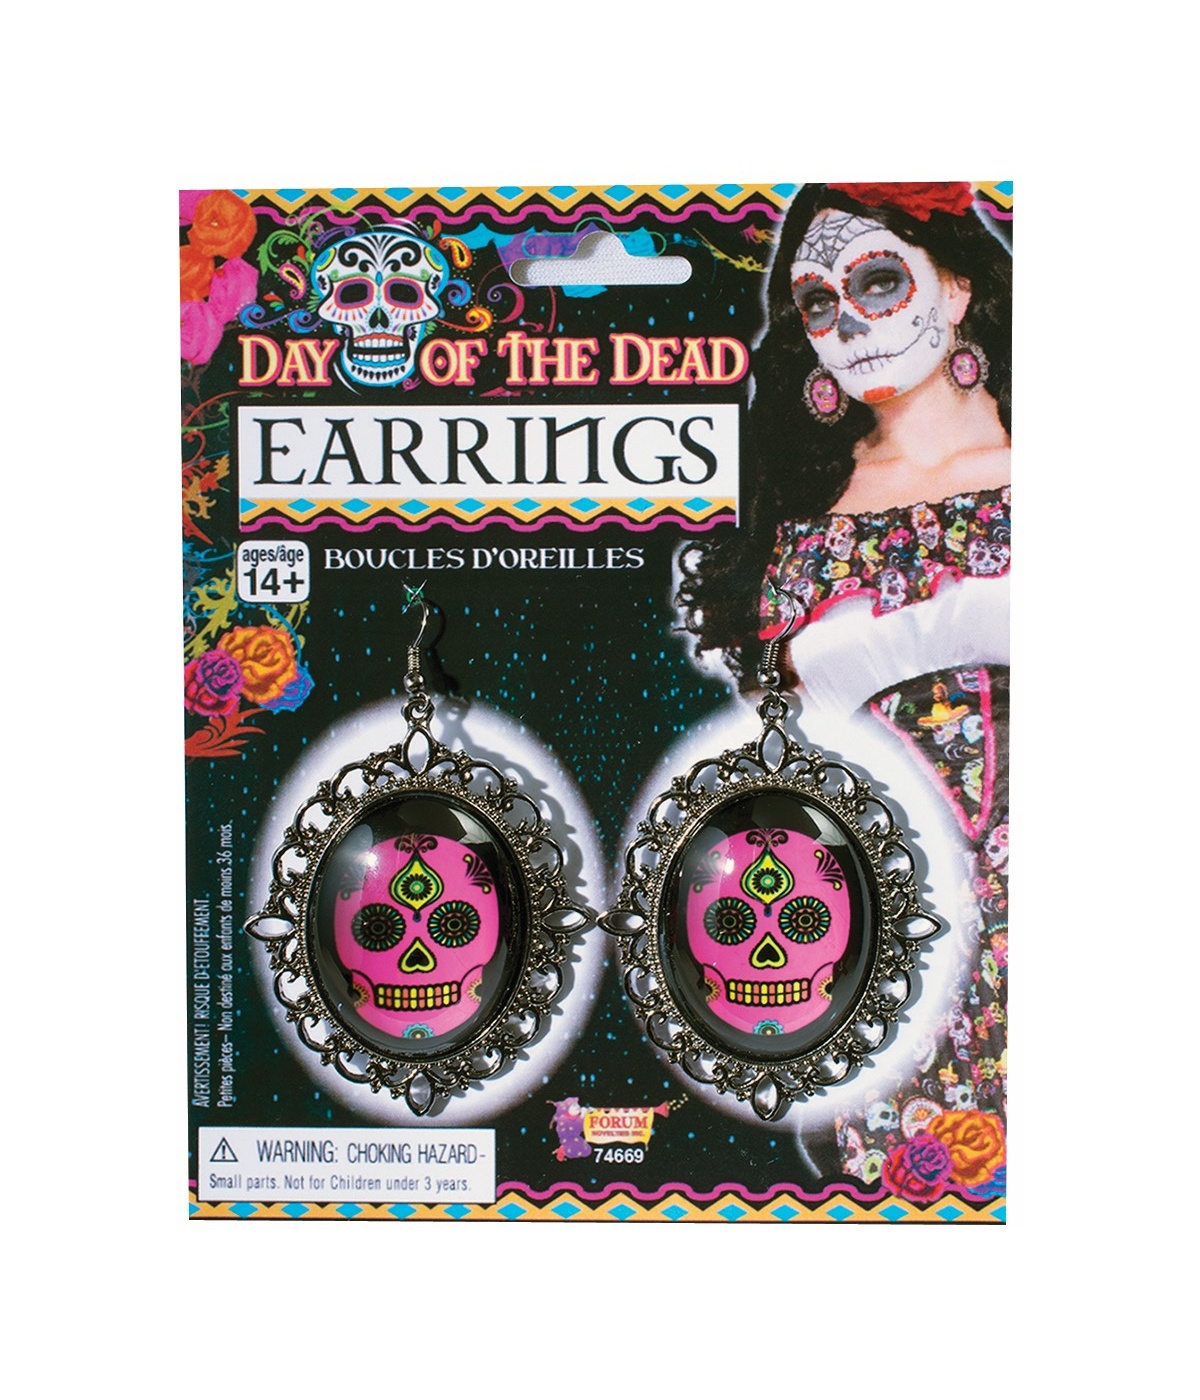  Day of the Dead Earrings Molded Skulls